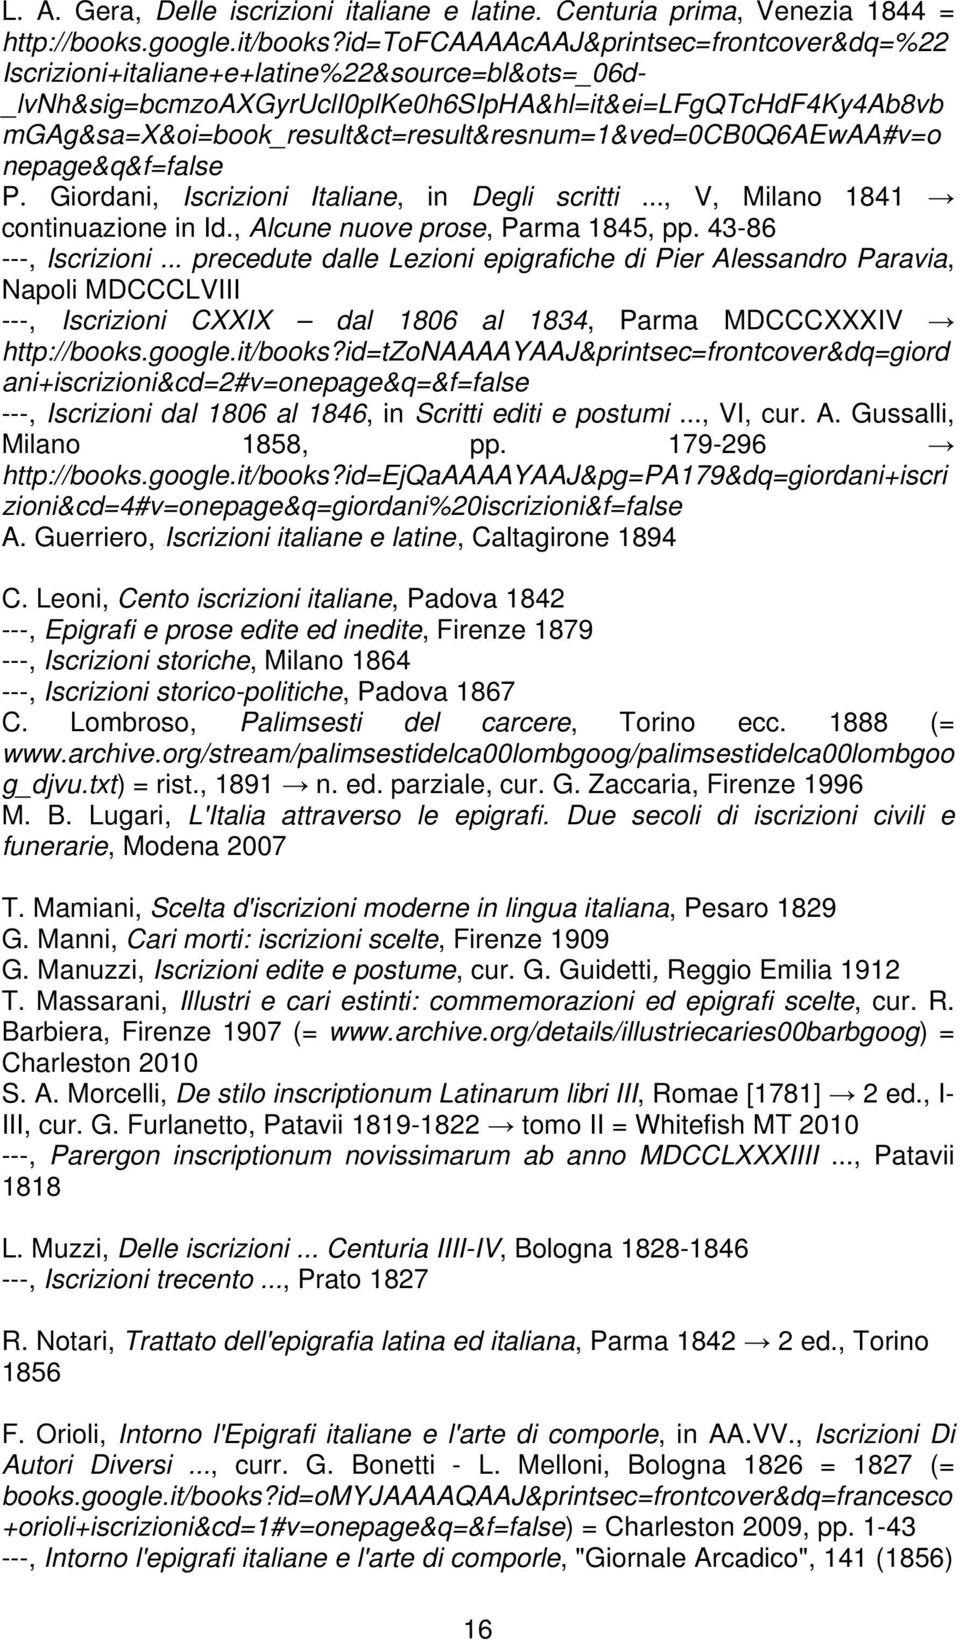 mgag&sa=x&oi=book_result&ct=result&resnum=1&ved=0cb0q6aewaa#v=o nepage&q&f=false P. Giordani, Iscrizioni Italiane, in Degli scritti..., V, Milano 1841 continuazione in Id.